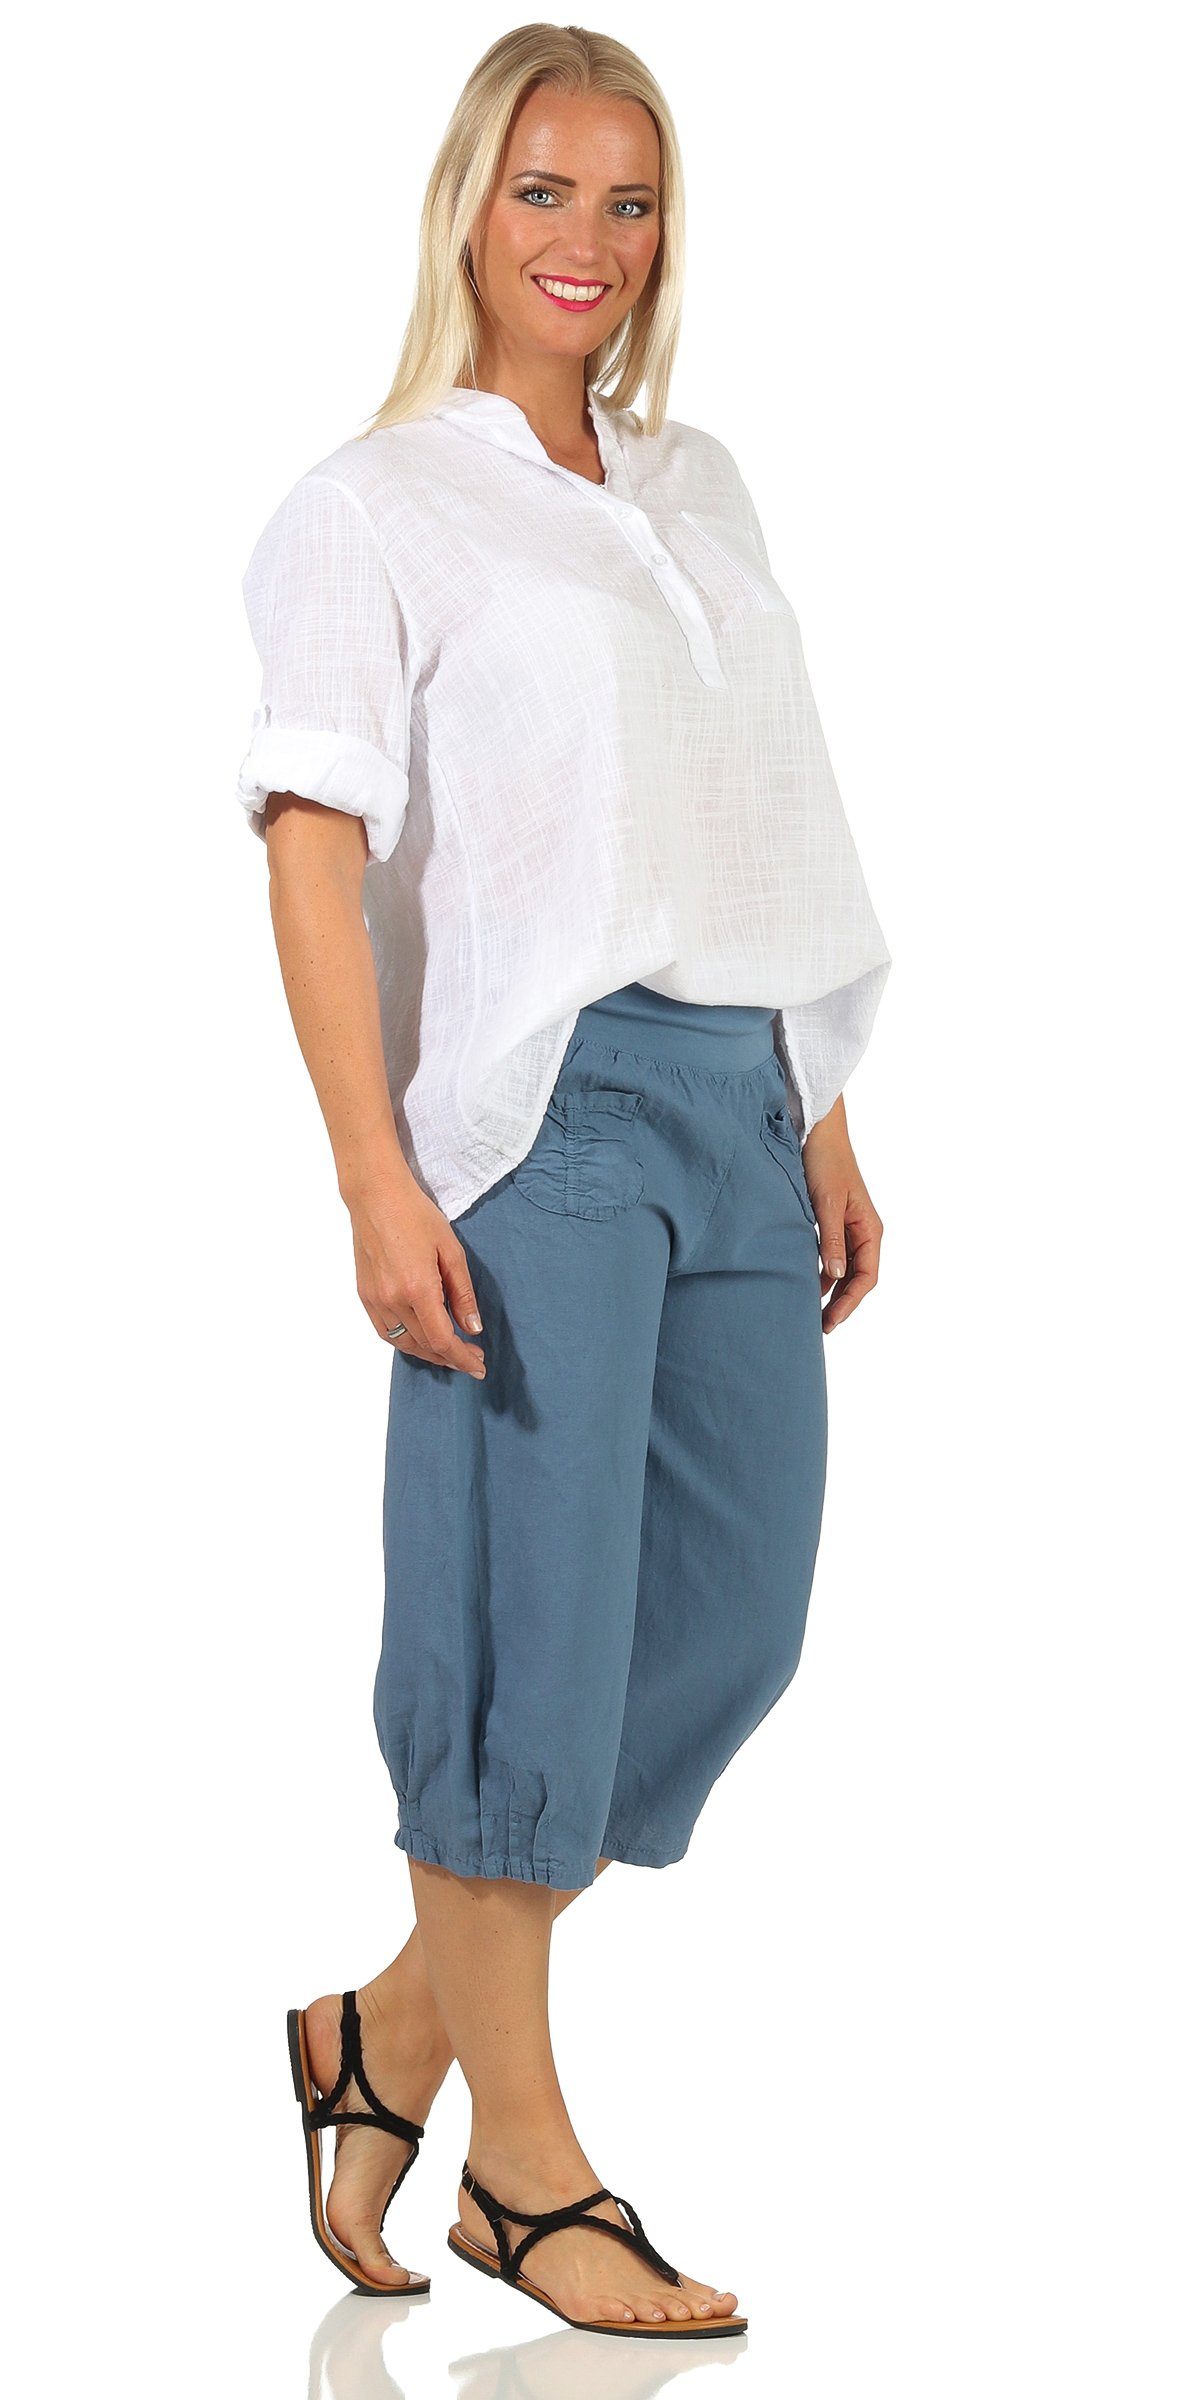 Aurela Damenmode Leinenhose Leinenhose Damen kurze Sommerhose Leinen Bermuda elastischer Gummizug, modische Sommer Farben, auch in großen Größen erhältlich Jeans